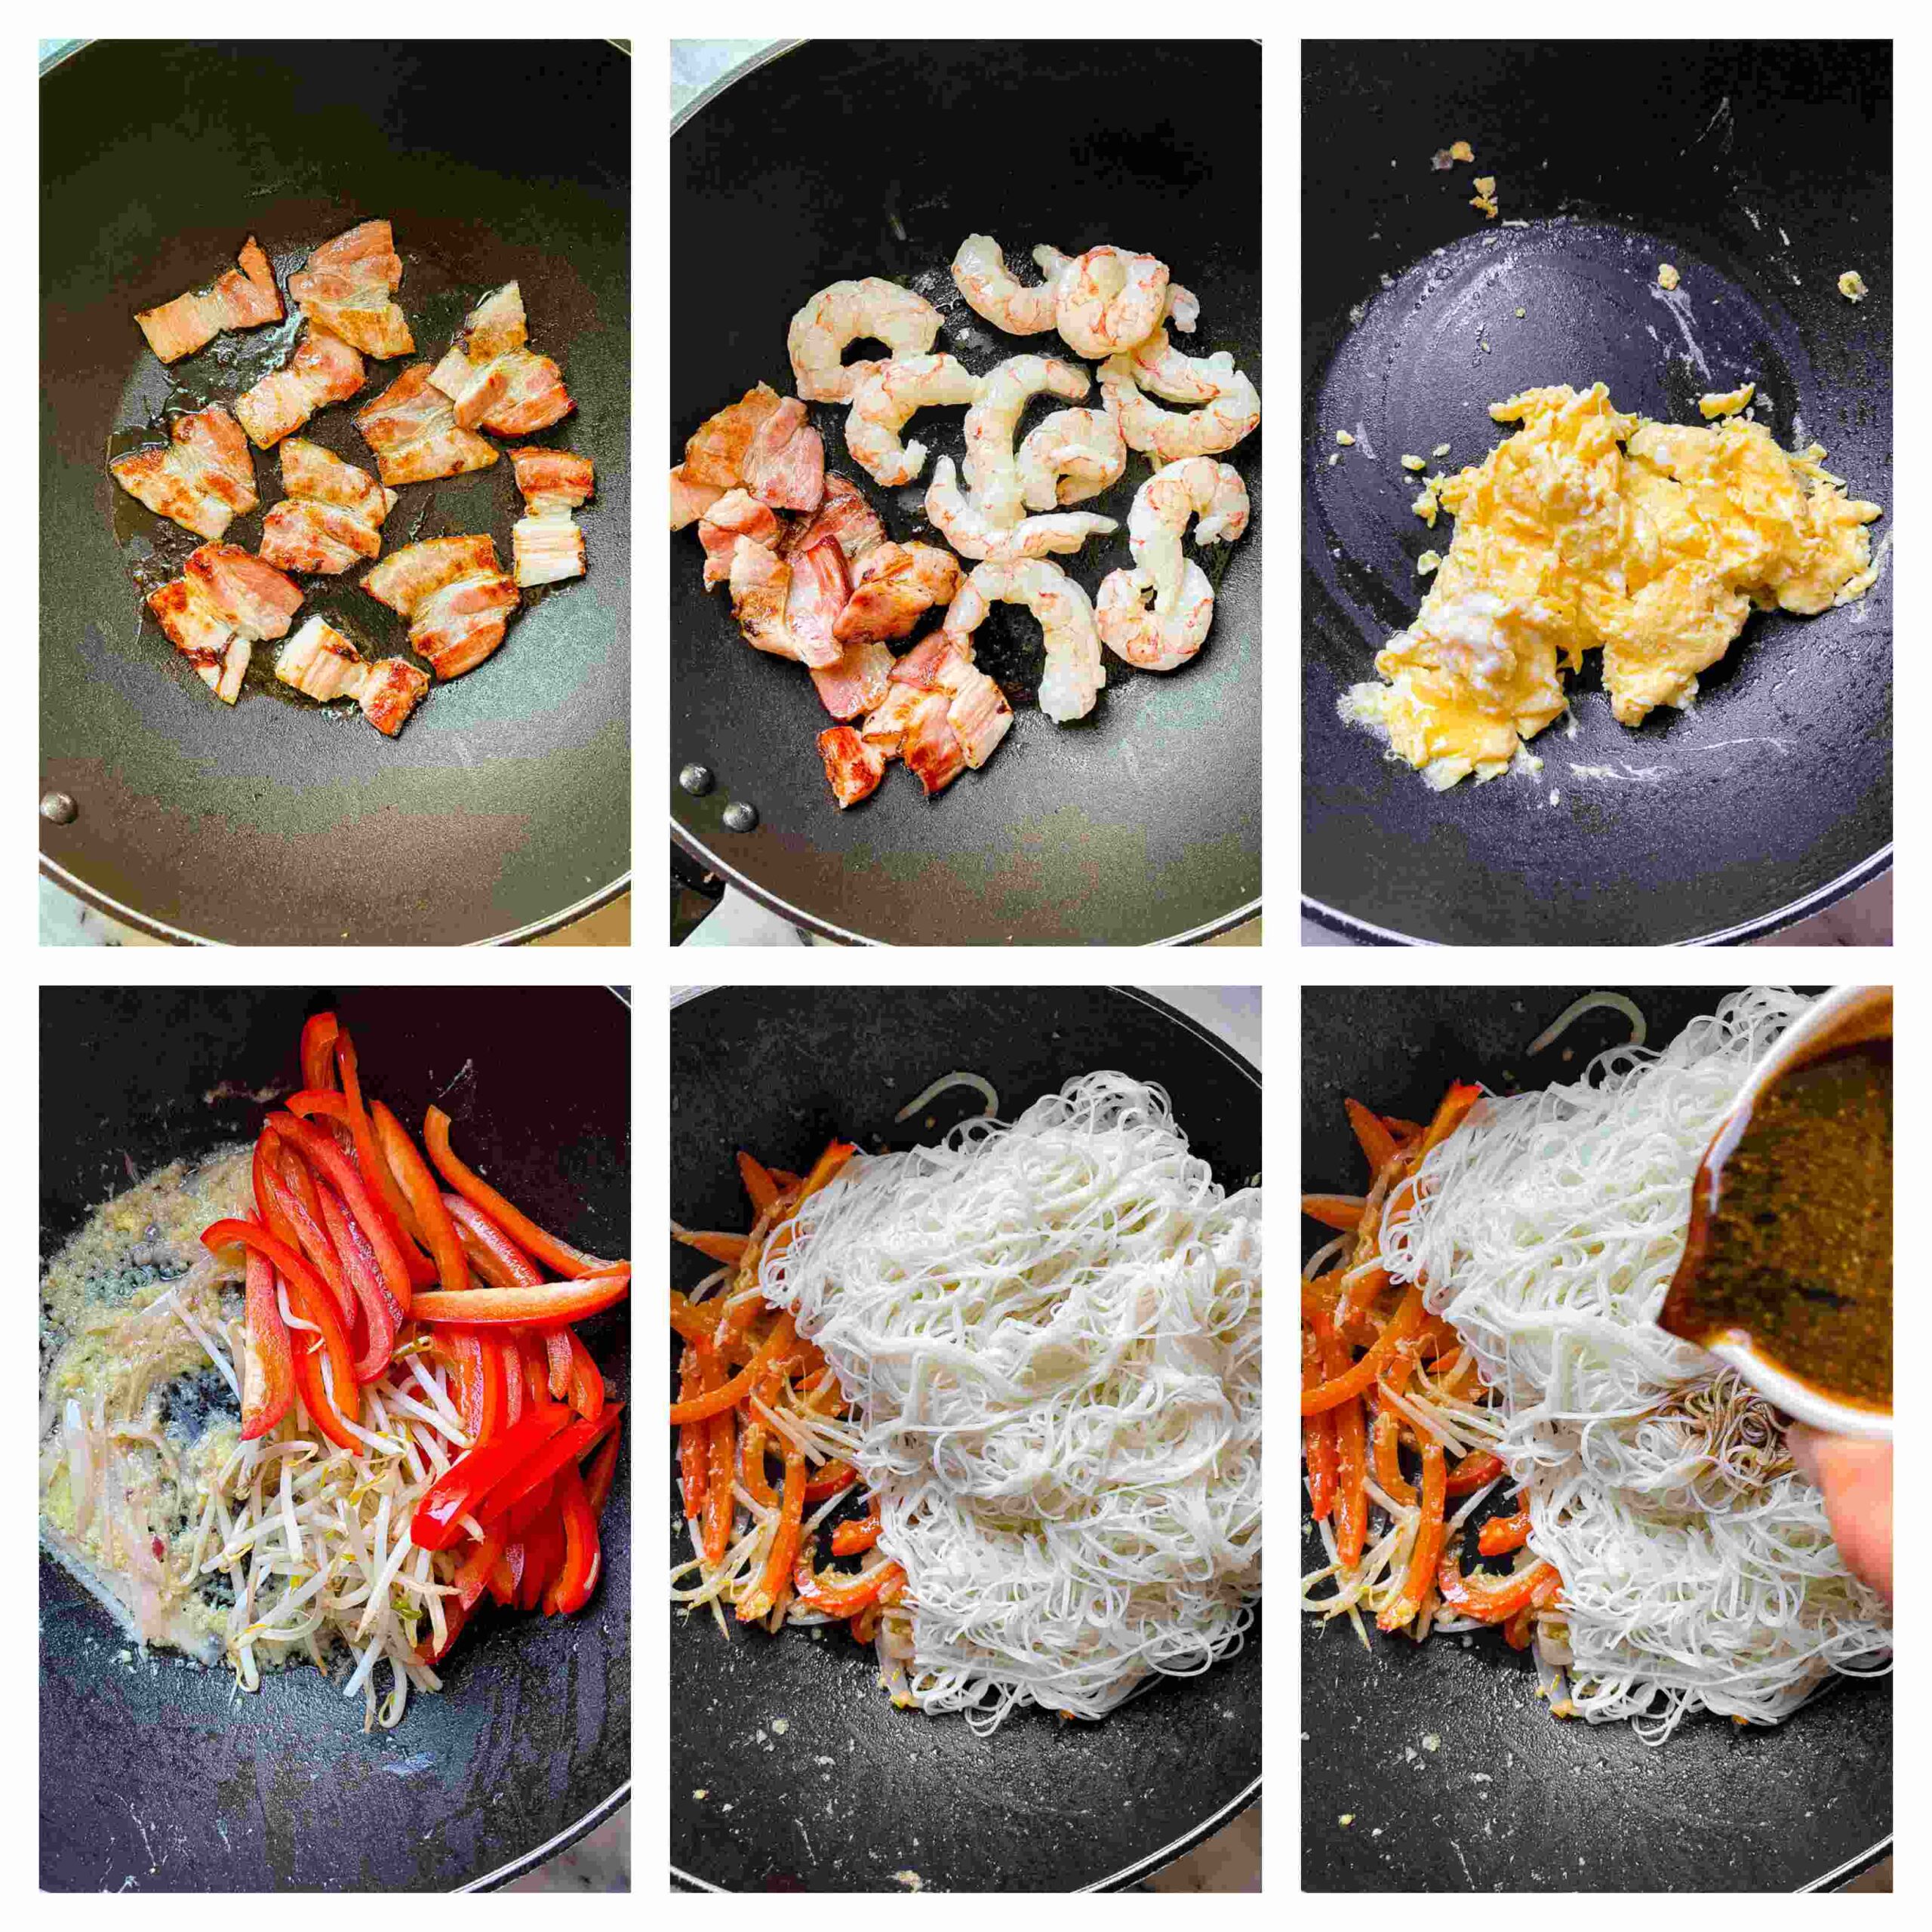 Singapore noodles process images